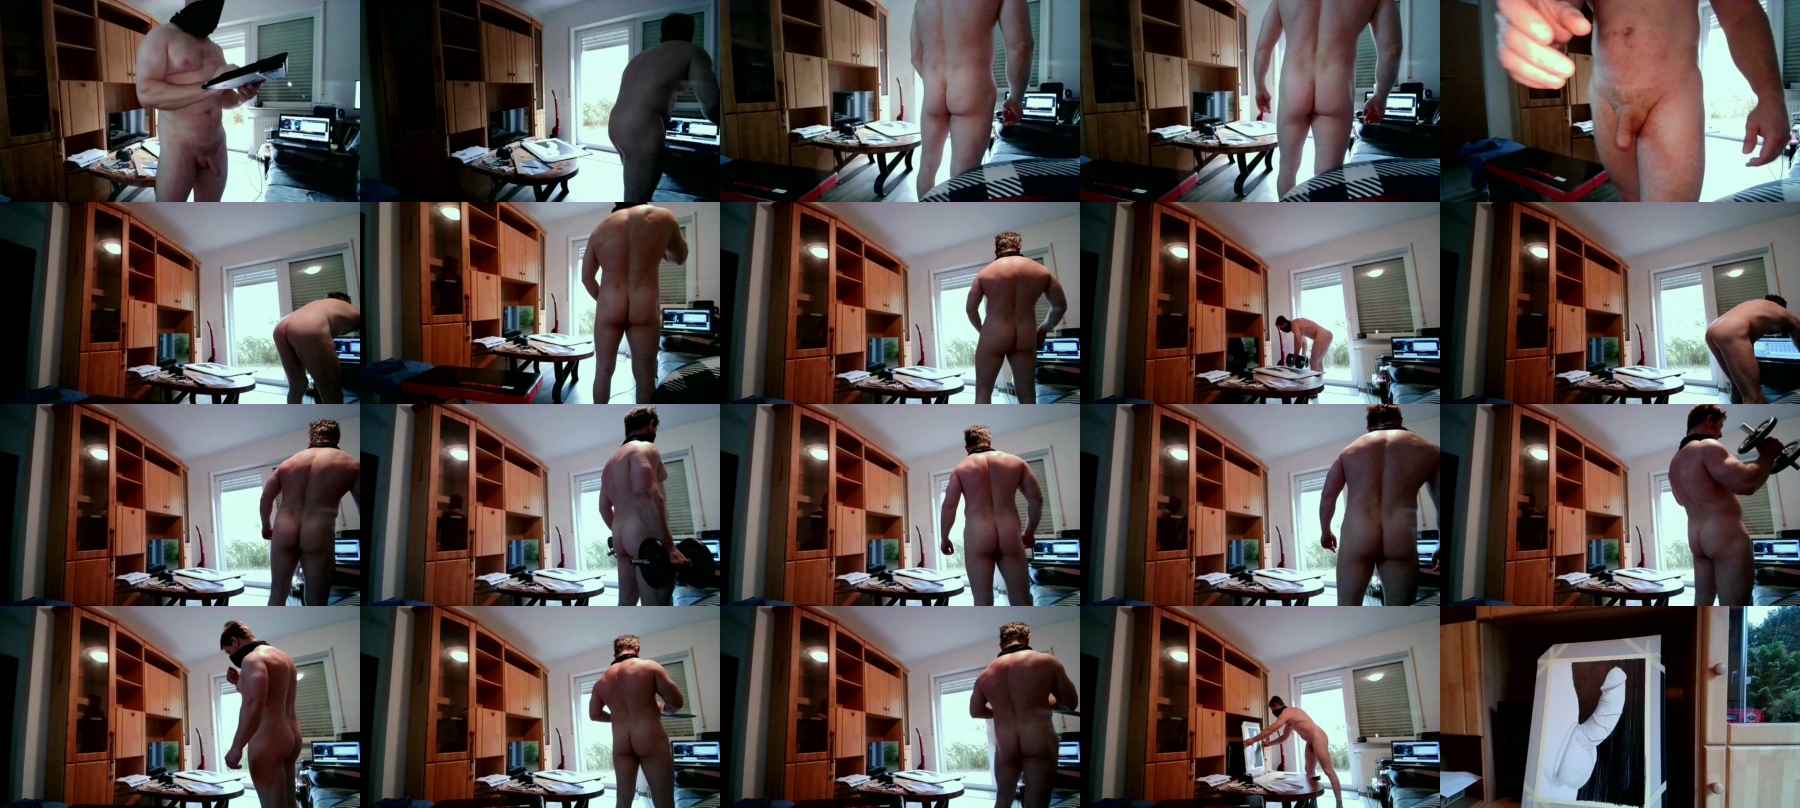 Garth_NakedArt  13-11-2021 Recorded Video Webcam